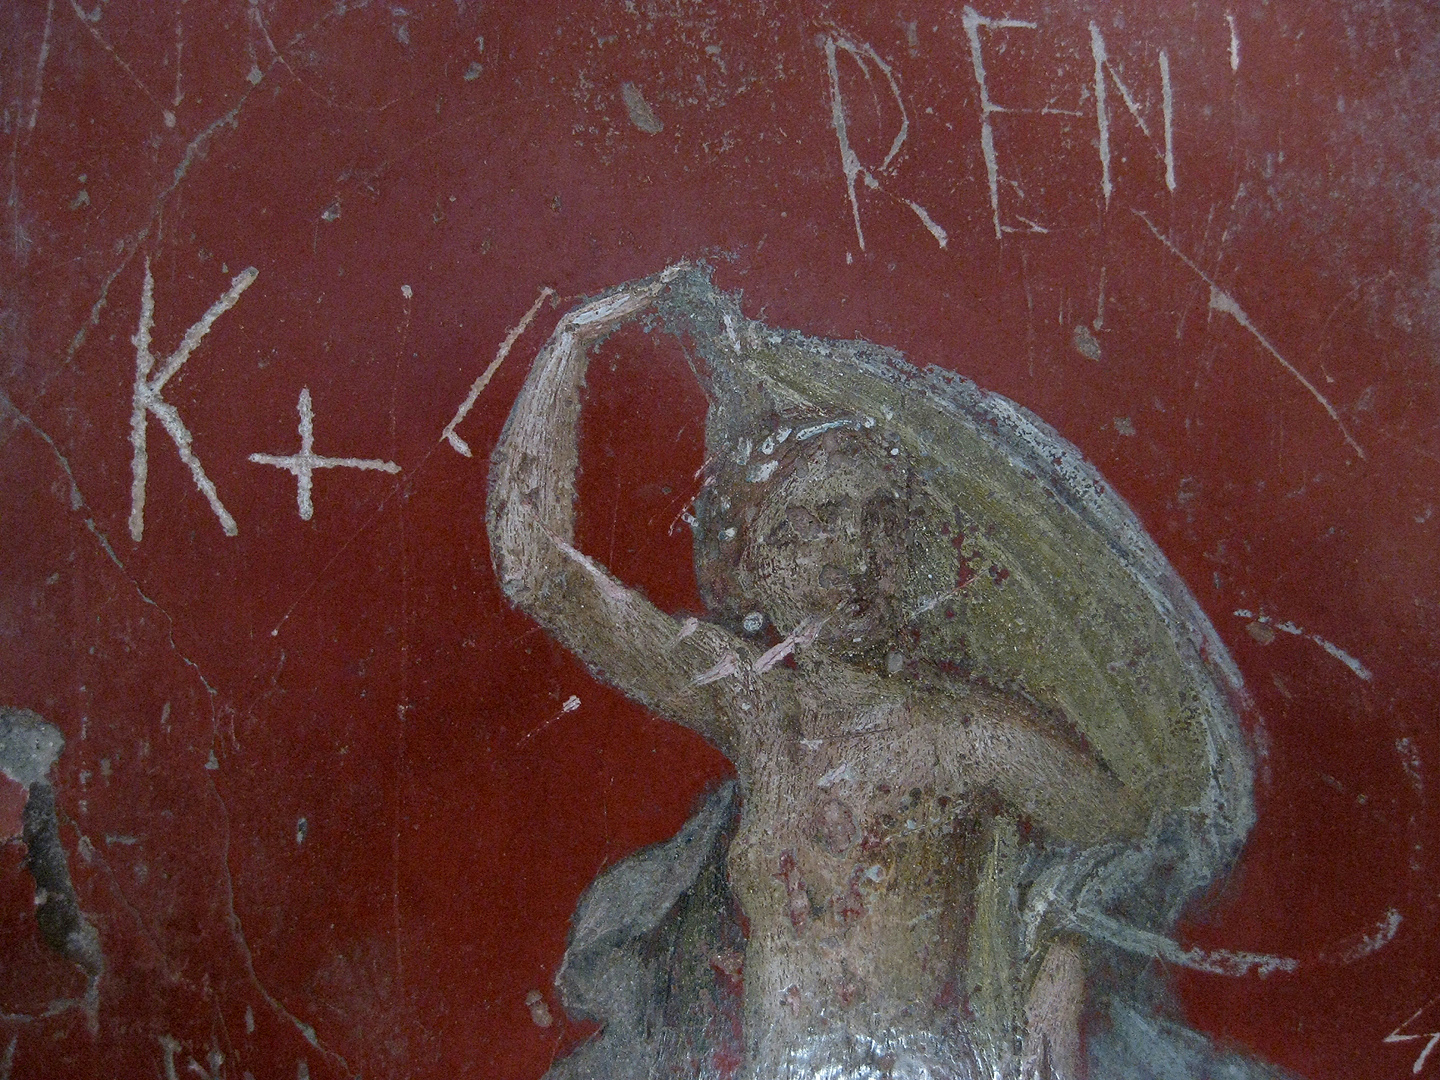 Vollerij van Stephanus, Pompeii, Fullery of Stephanus, Pompeii